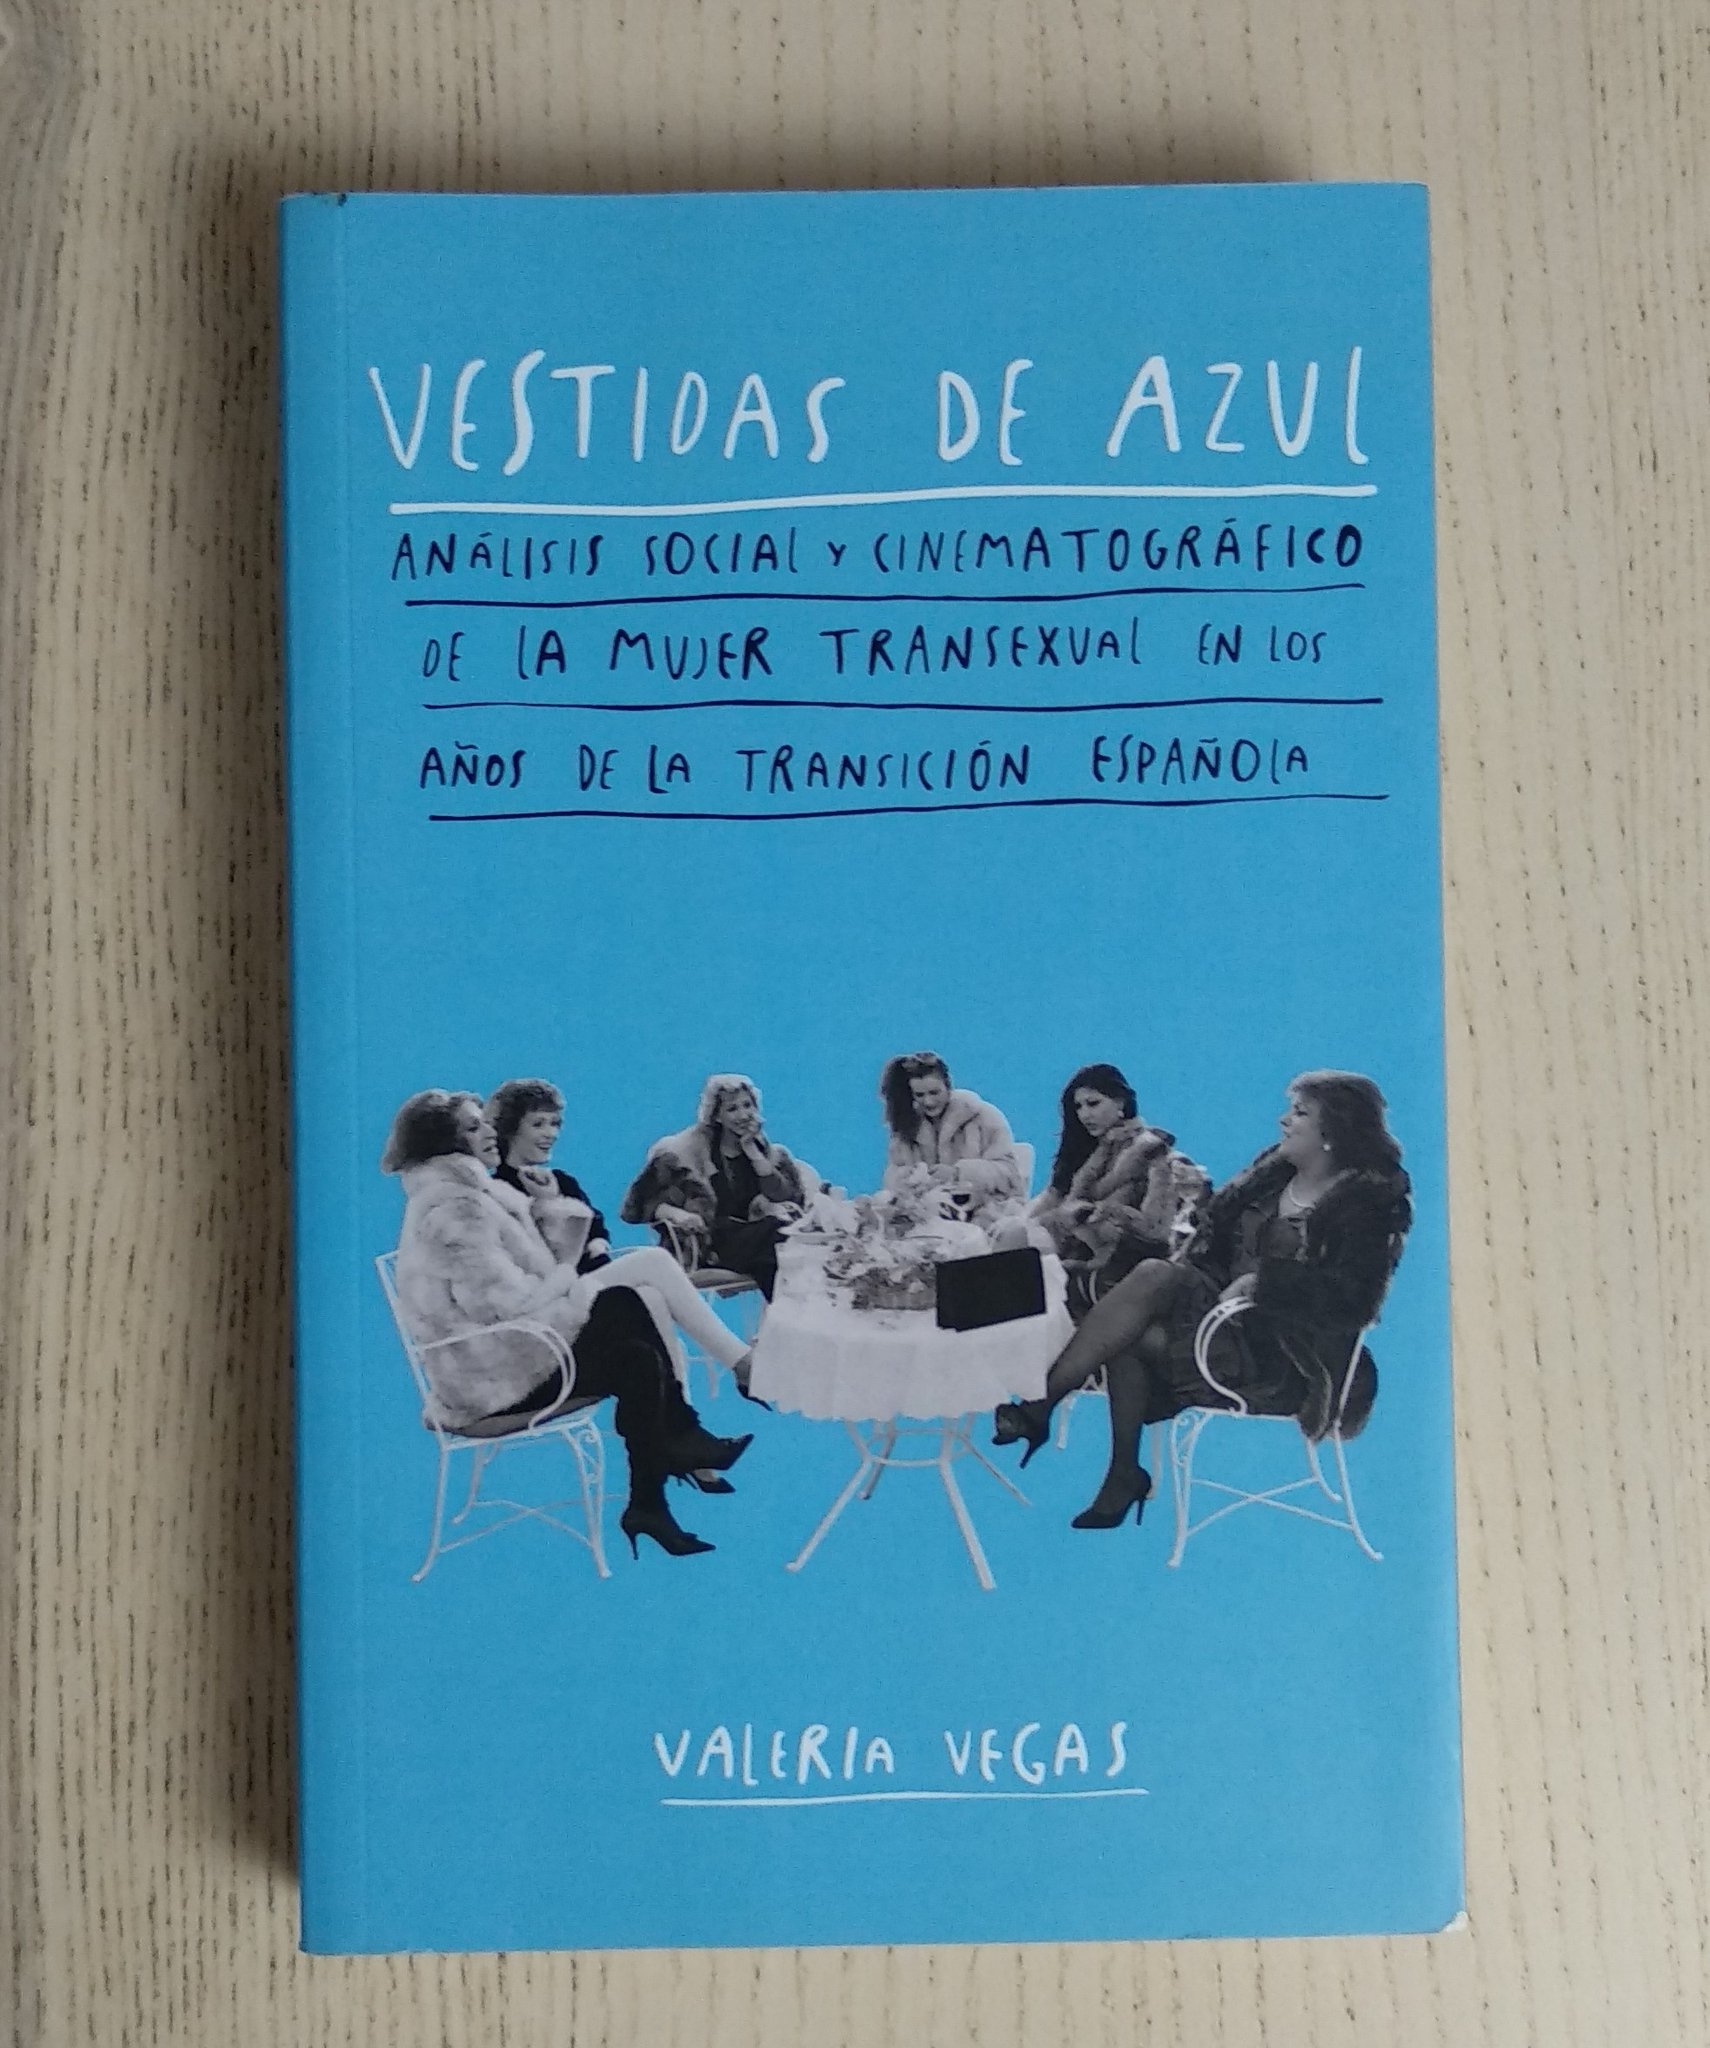 Elsa Ruiz on X: 'Vestidas de azul' de Valeria Vegas (a quien conoceréis  por la biografía de Cristina Ortiz, la Veneno) de @DosBigotesEdit.  #YoLeoAutoras  / X